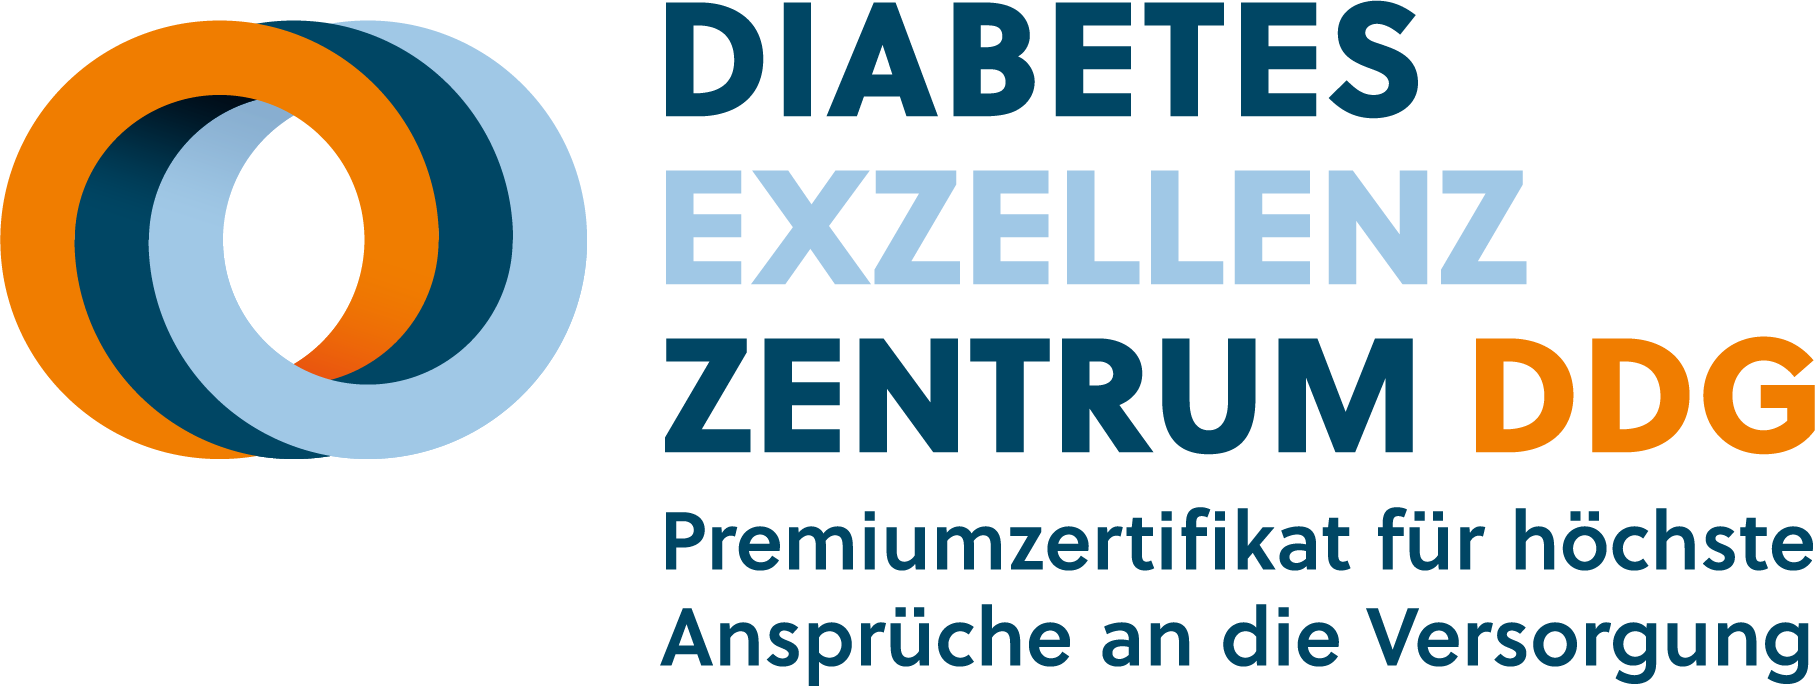 DIABETES EXZELLENZ ZENTRUM DDG | Zertifikat